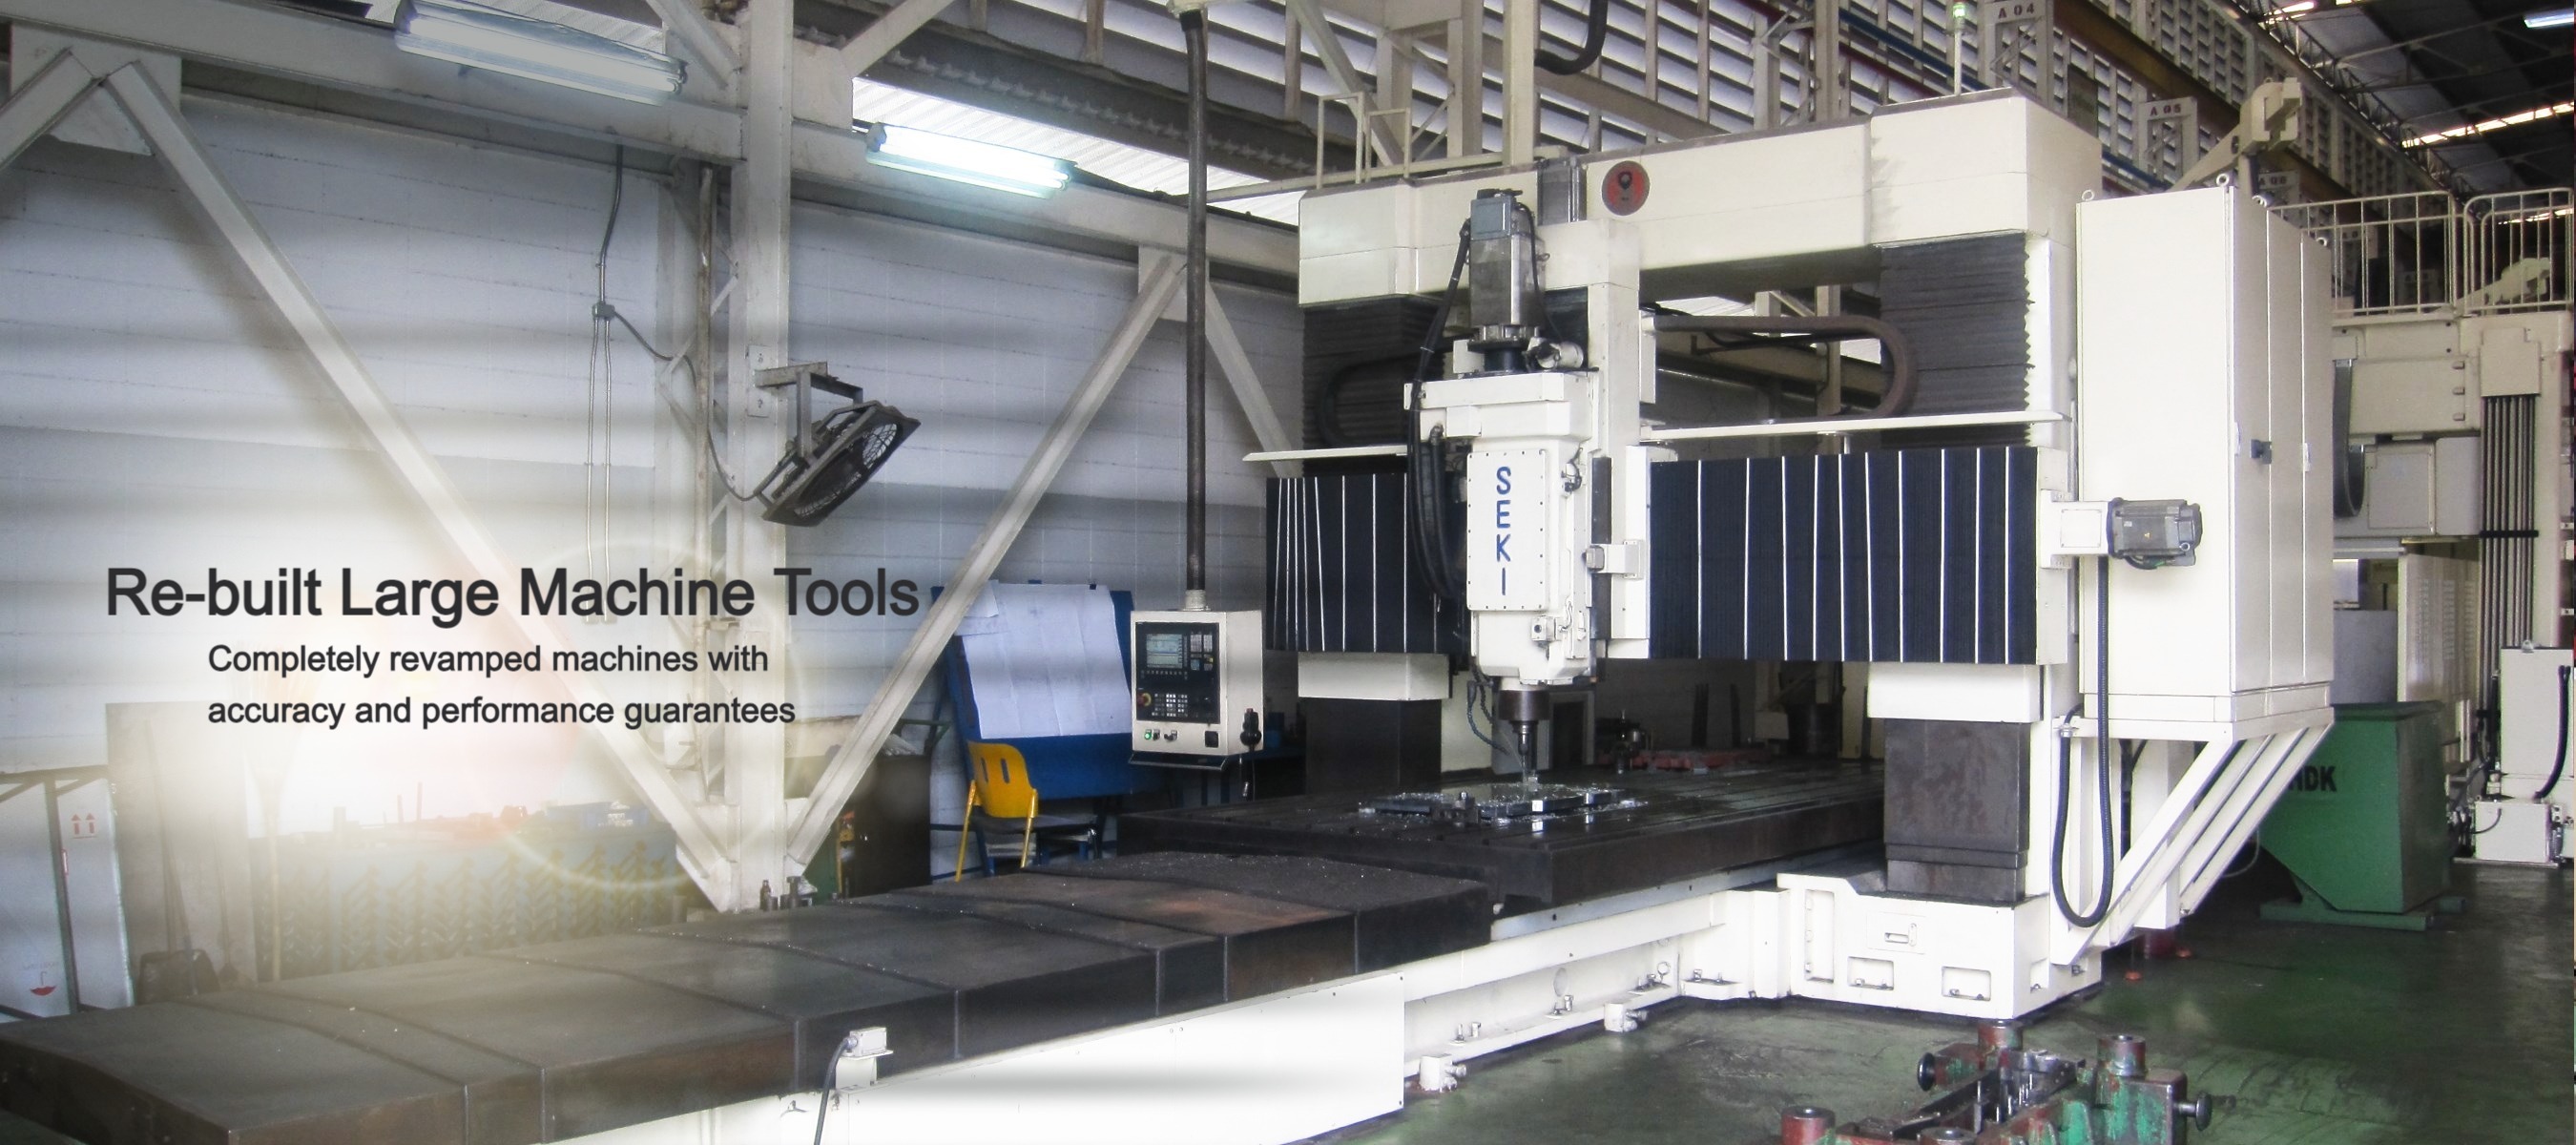 Re-built large CNC machine tools